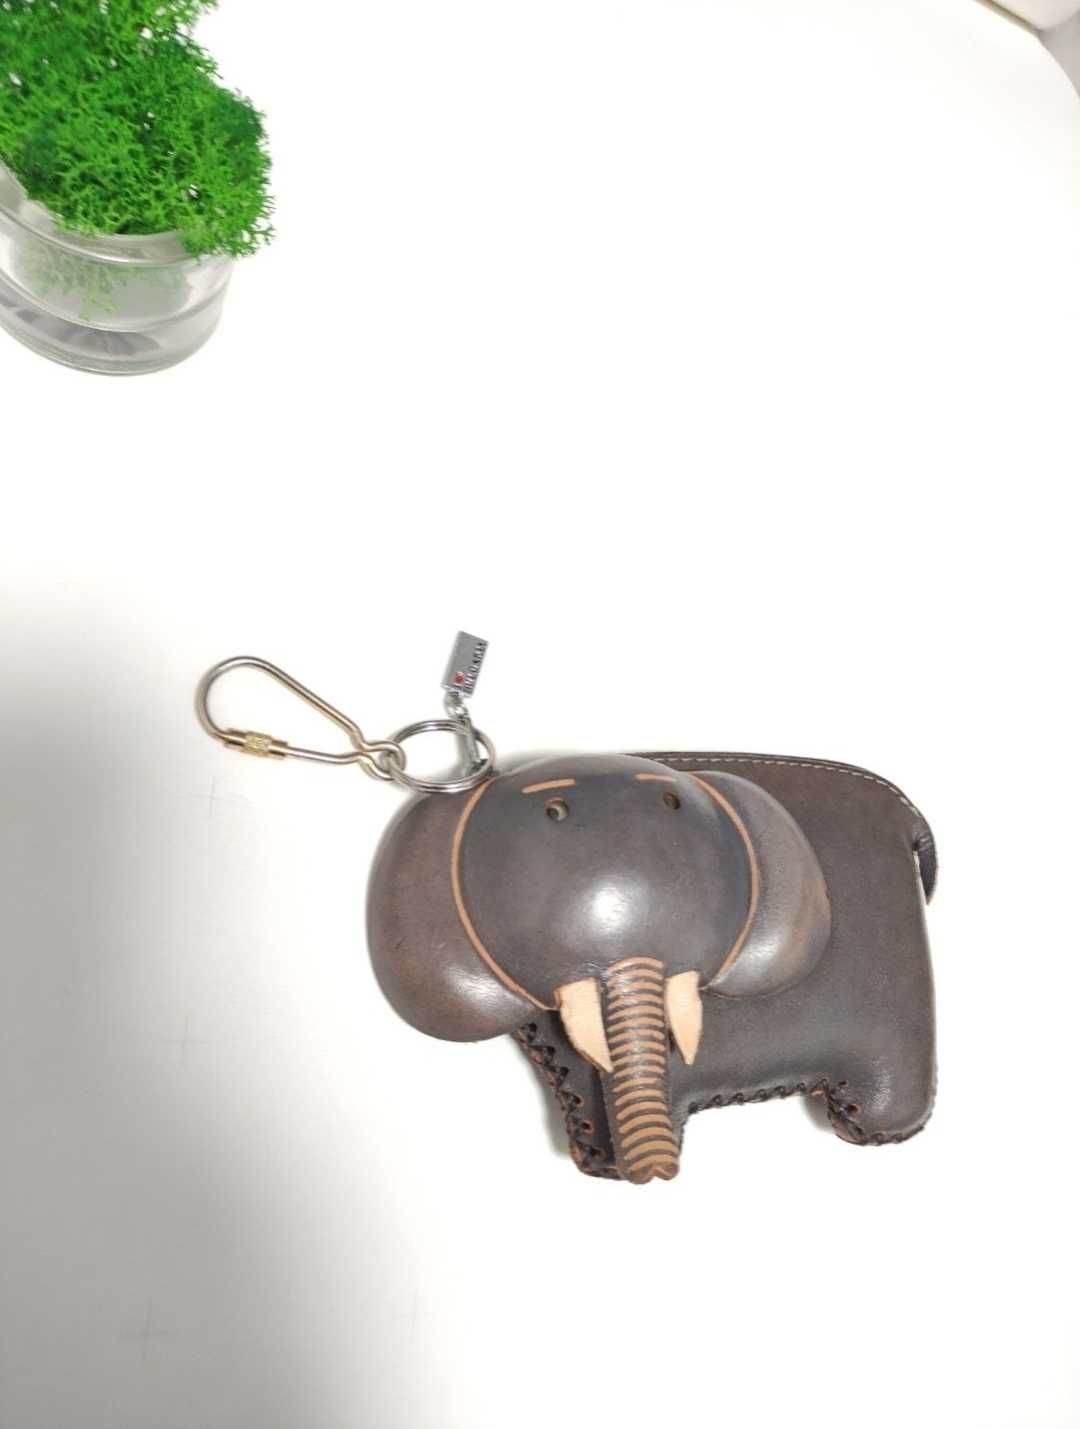 Art шкіряний гаманець слон монетниця / ключниця шкіра у вигляді слона